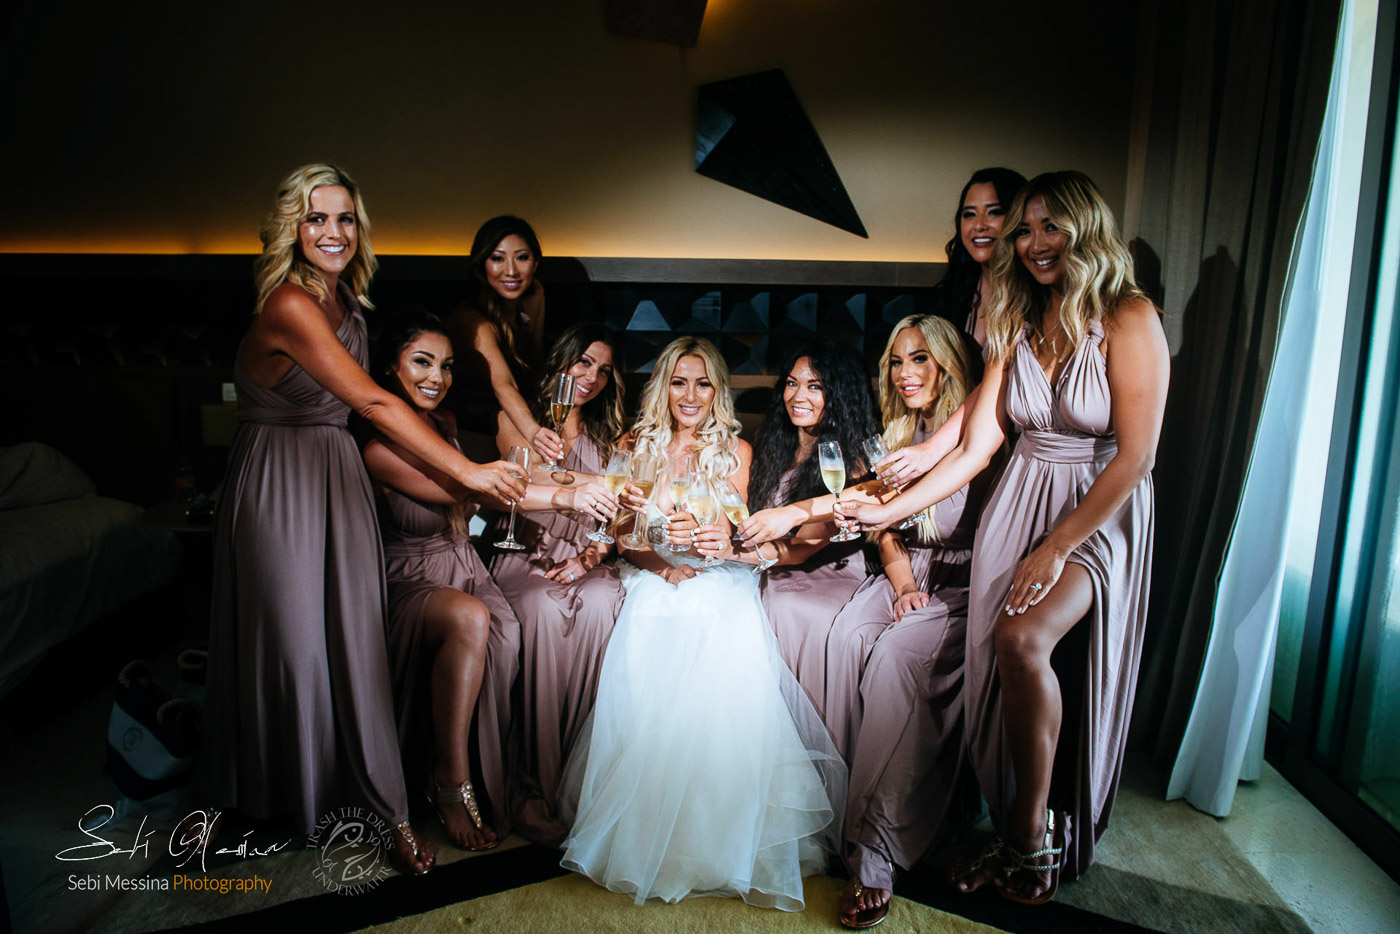 Bridesmaids at a destination wedding in Cancun Mexico – Sebi Messina Photography